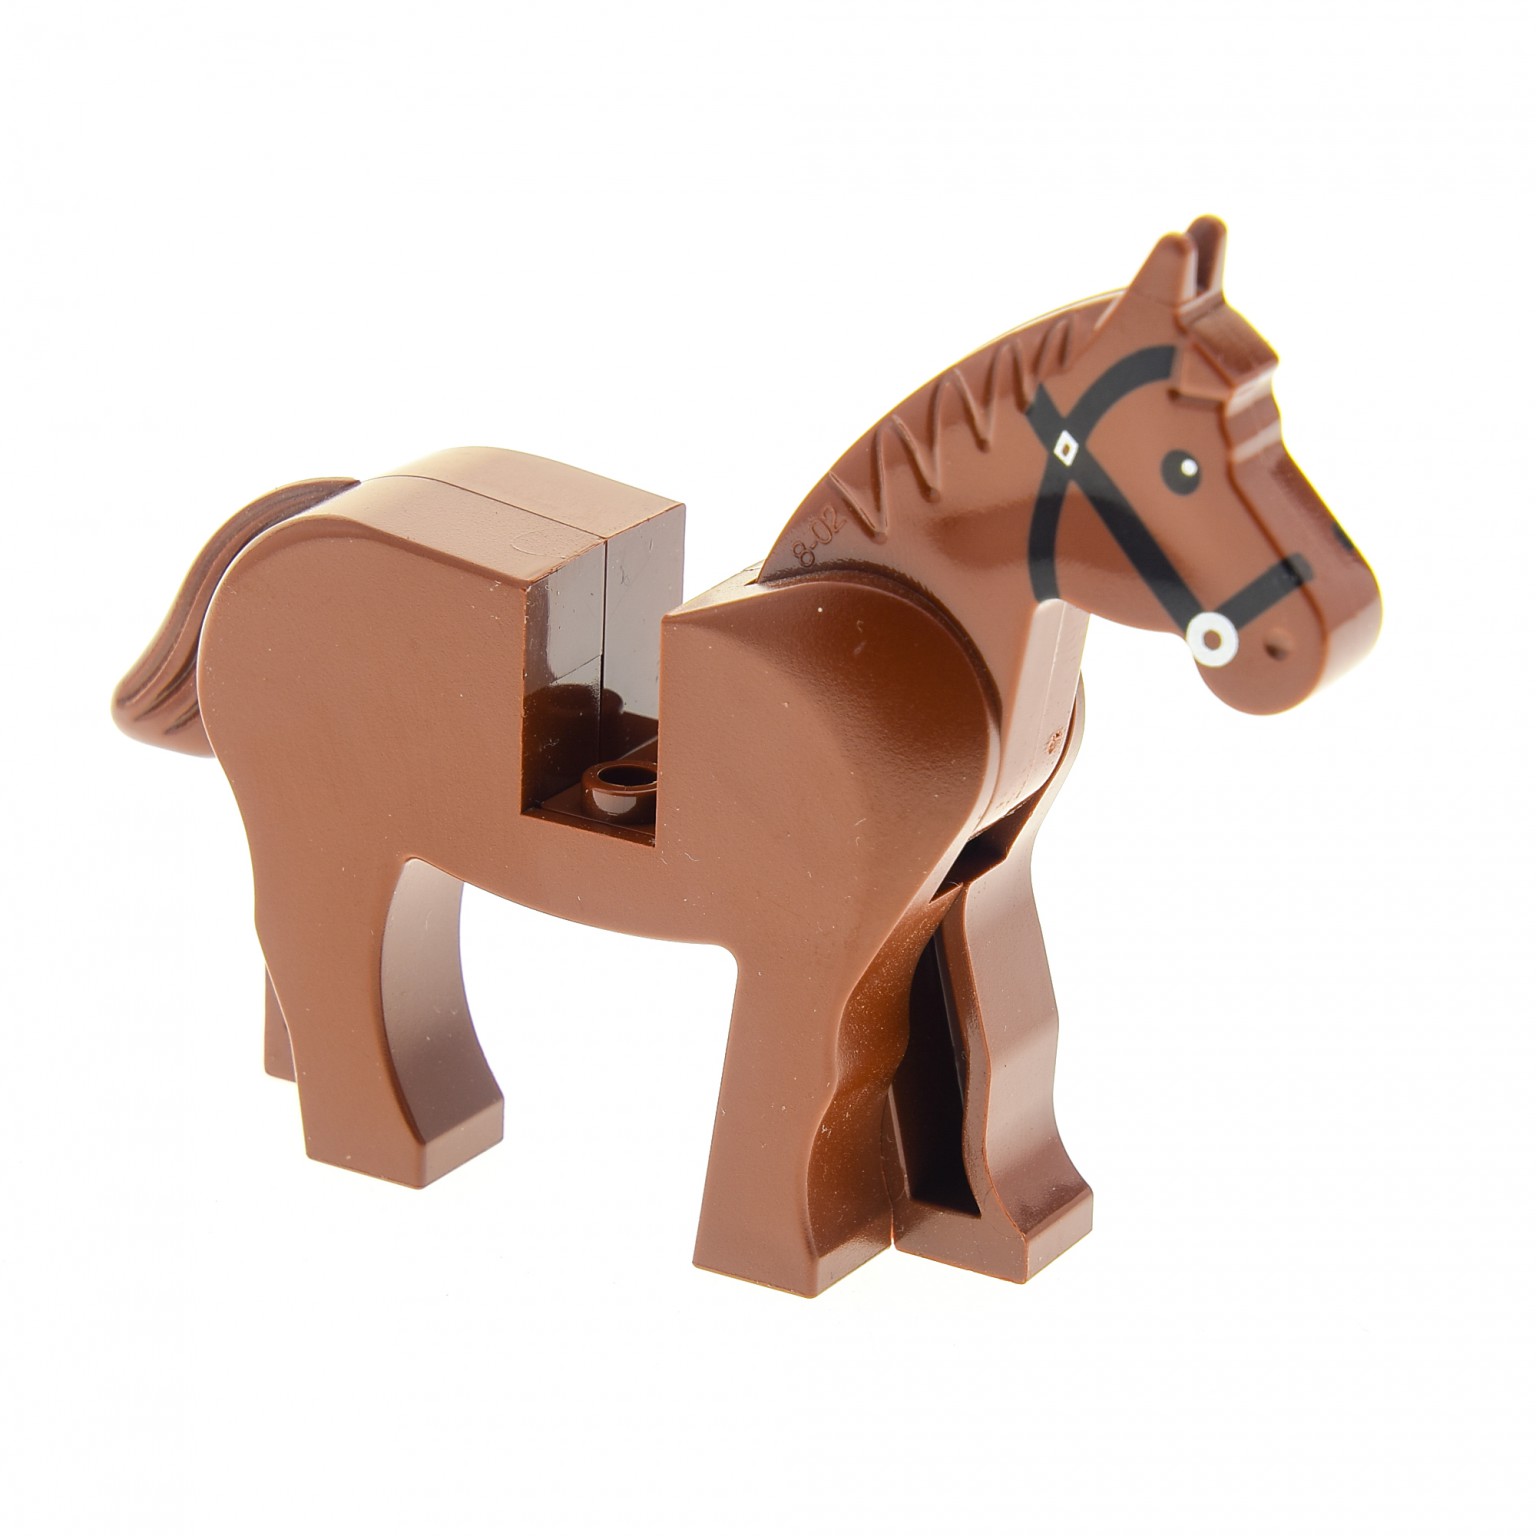 1 x LEGO® Pferd für Ritter/City/Cowboy gebrauch in braun/schwarz/weiß